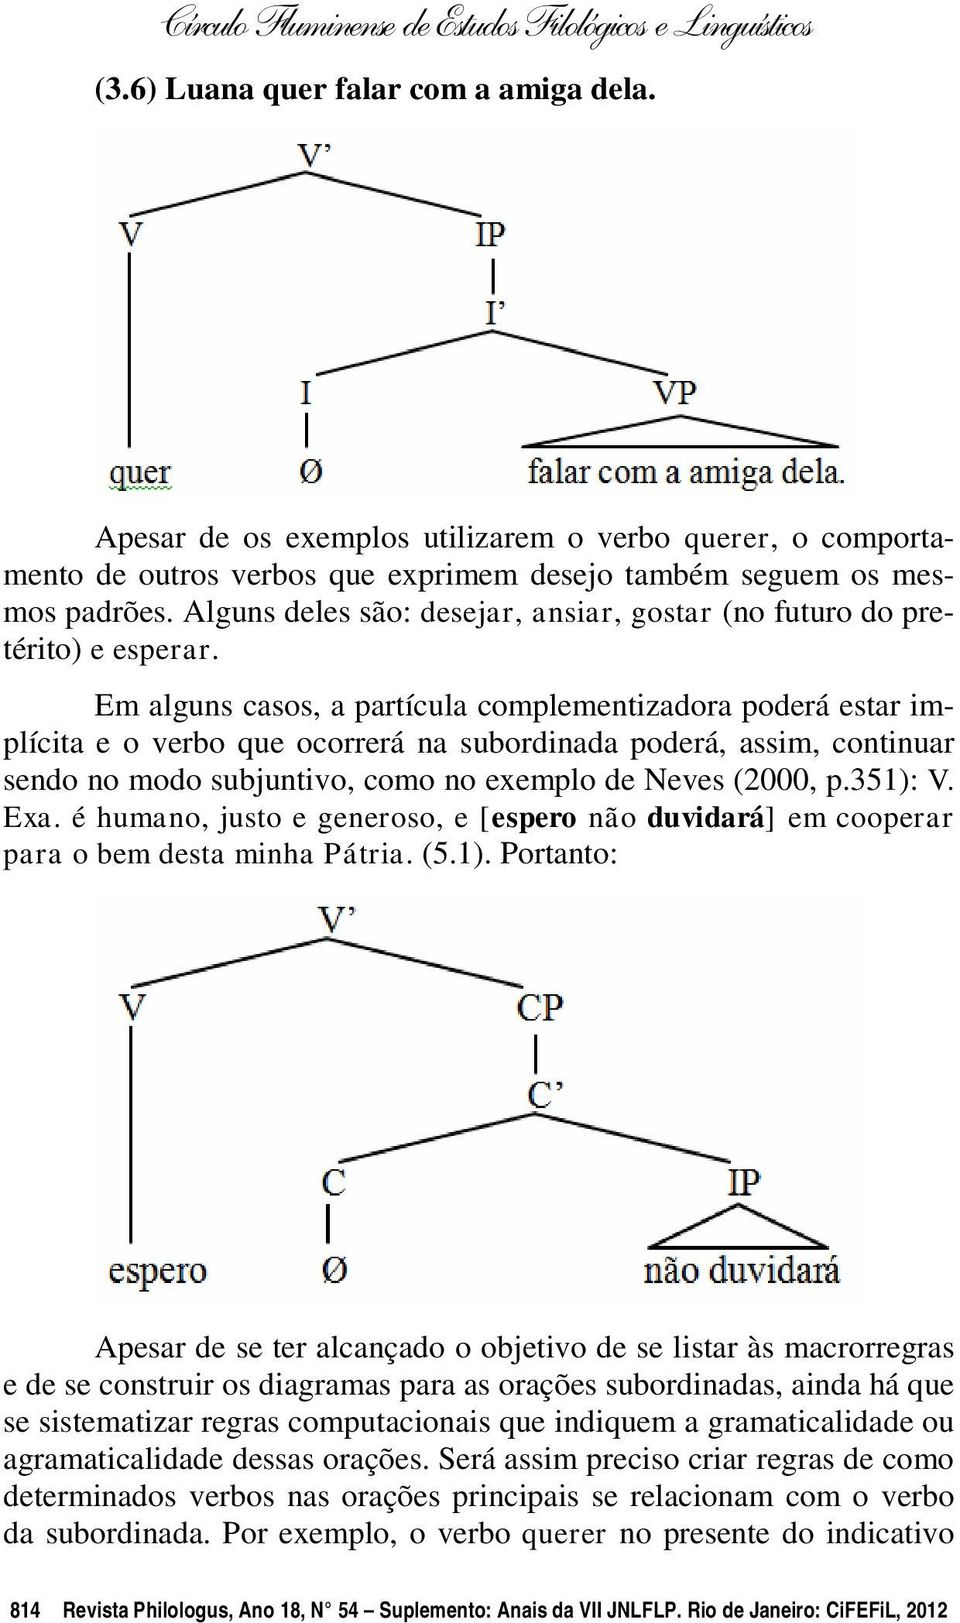 Em alguns casos, a partícula complementizadora poderá estar implícita e o verbo que ocorrerá na subordinada poderá, assim, continuar sendo no modo subjuntivo, como no exemplo de Neves (2000, p.